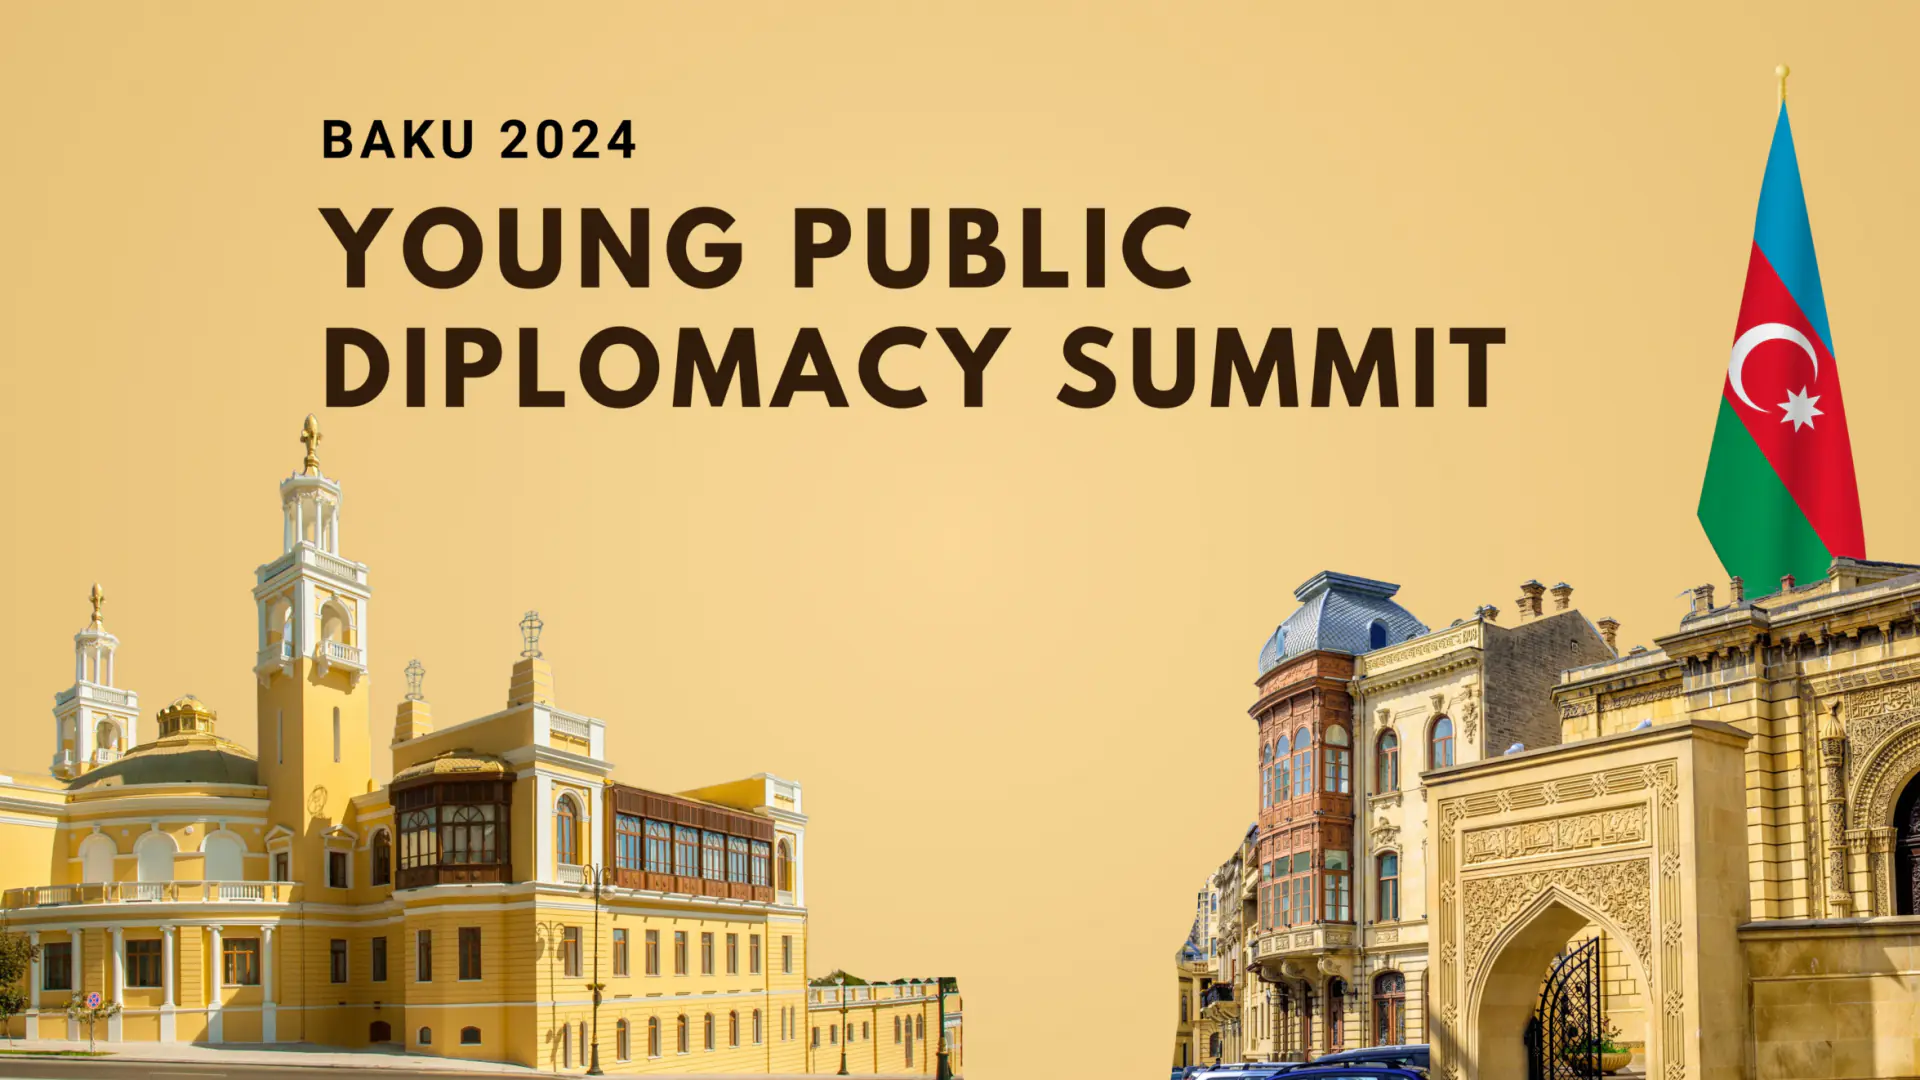 16-40 yosh oraligʻidagi barcha uchun Baku shahrida xarajatlari toʻliq qoplanadigan sammit — Young Public Diplomacy Summit 2024